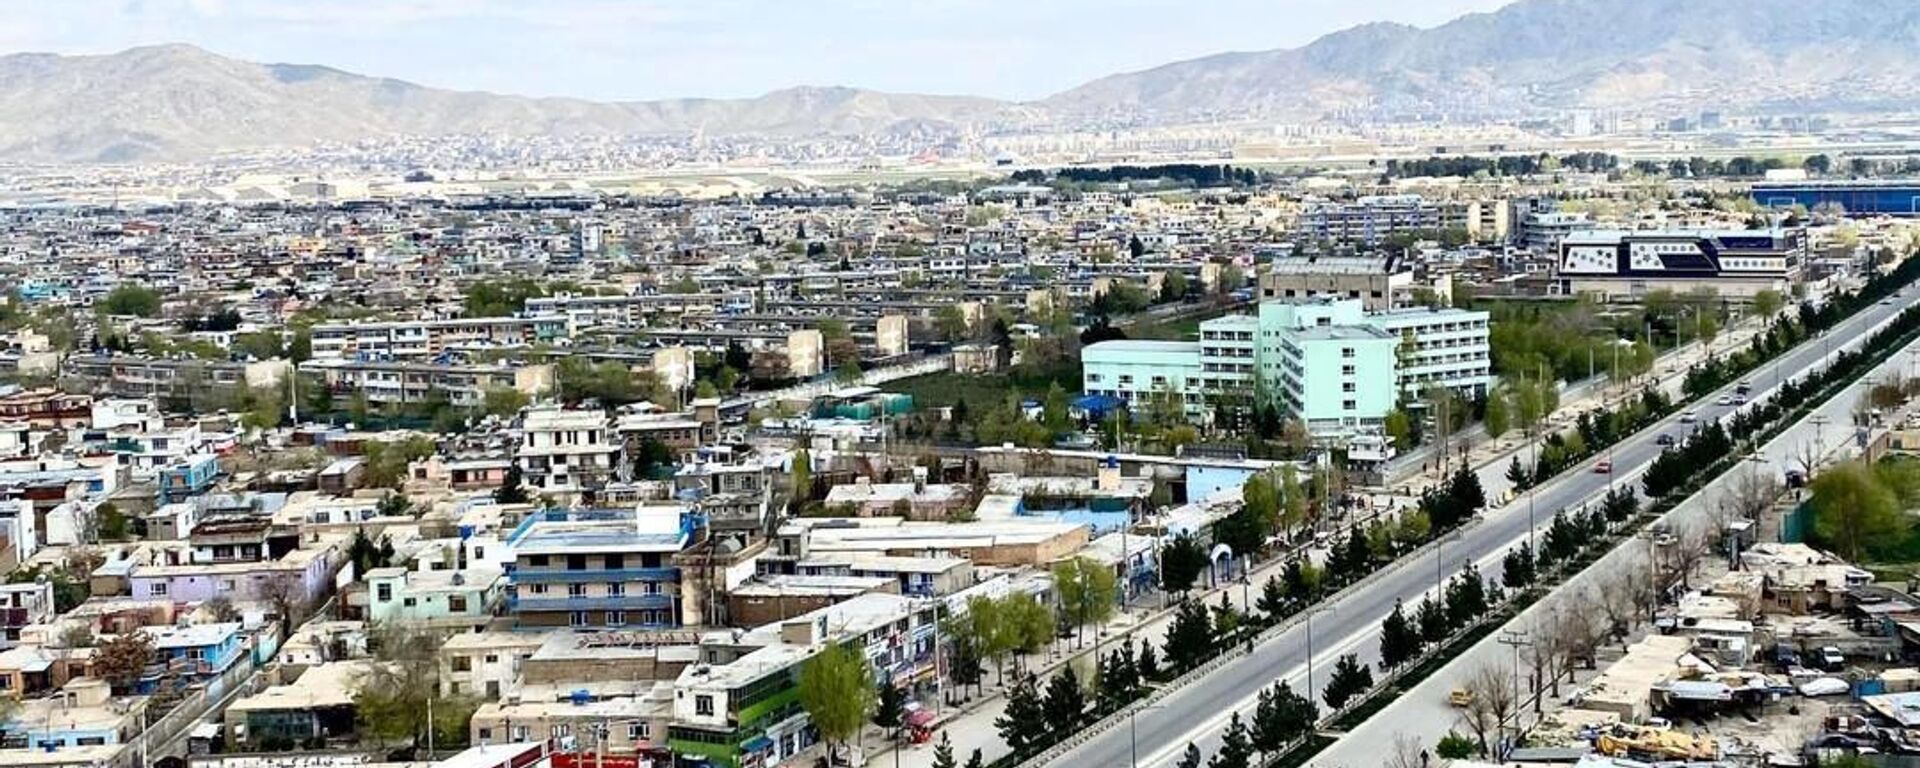 رسانه: امریکا از طالبان خواست تا پایان تخلیه وارد کابل نشوند - اسپوتنیک افغانستان  , 1920, 15.08.2021